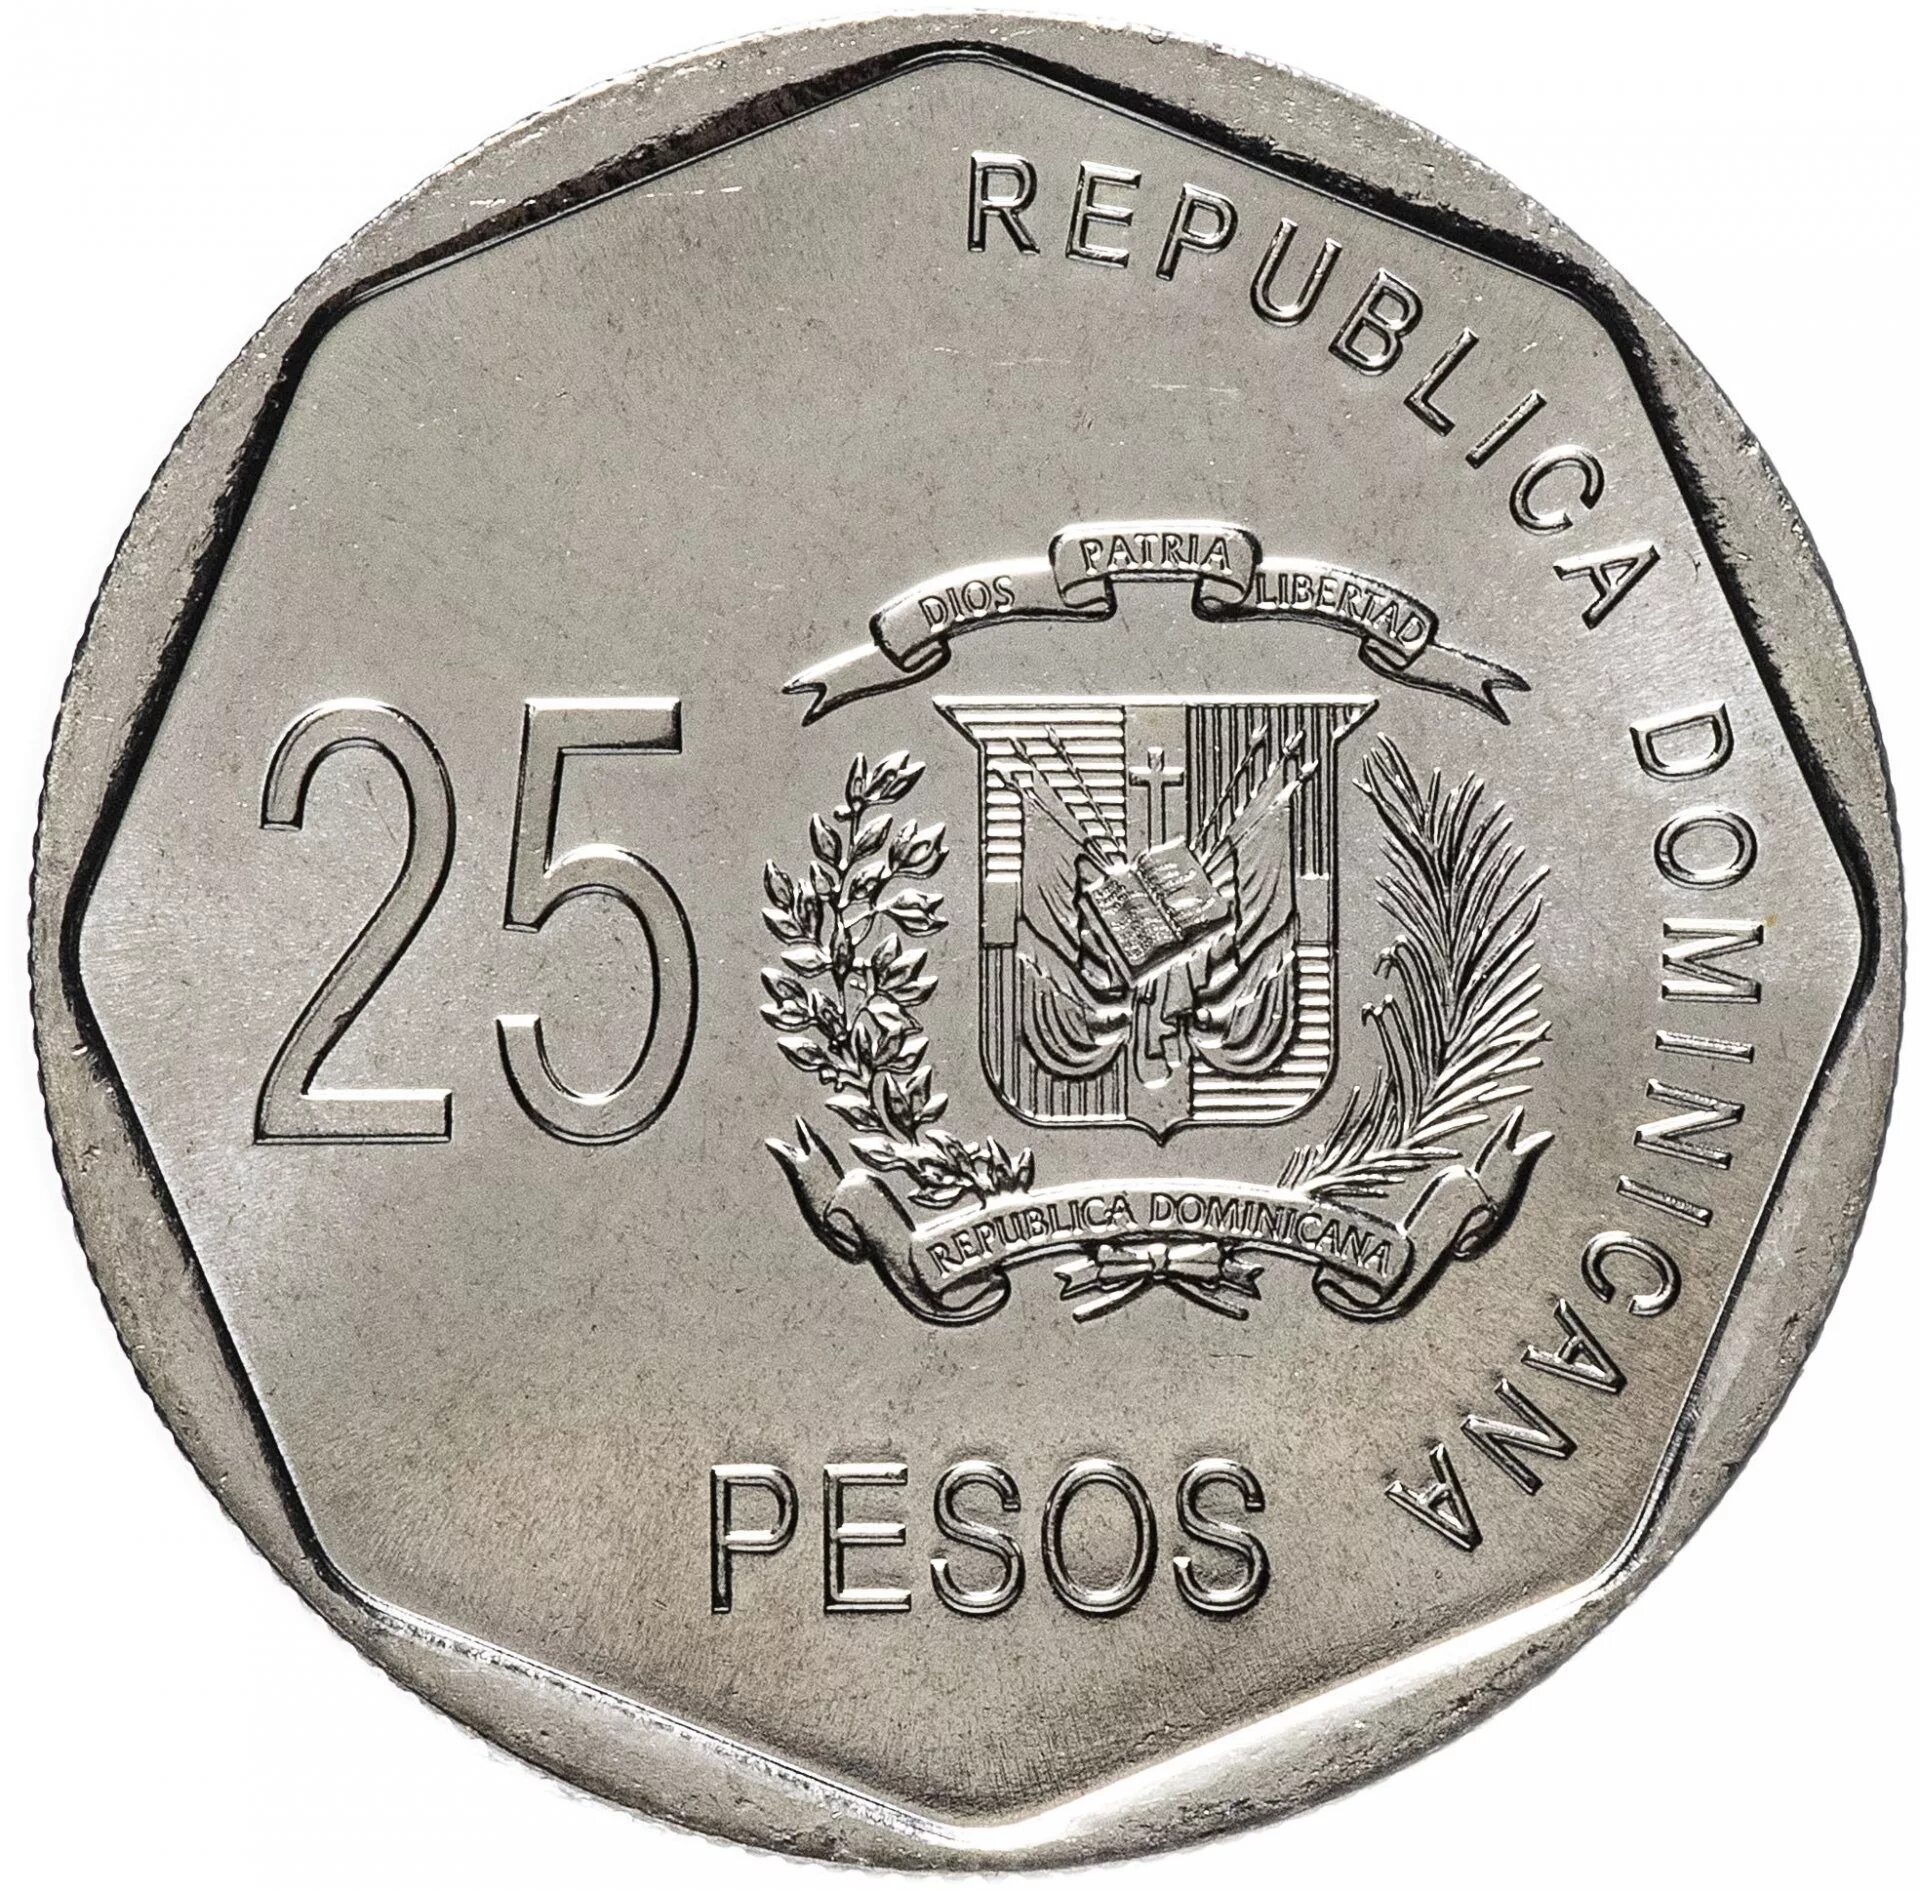 Валюта доминиканской республики. Песо монета. Песо Доминикана. 25 Pesos Республика Доминикана. 10 Песос 2005 Республика Доминикана.